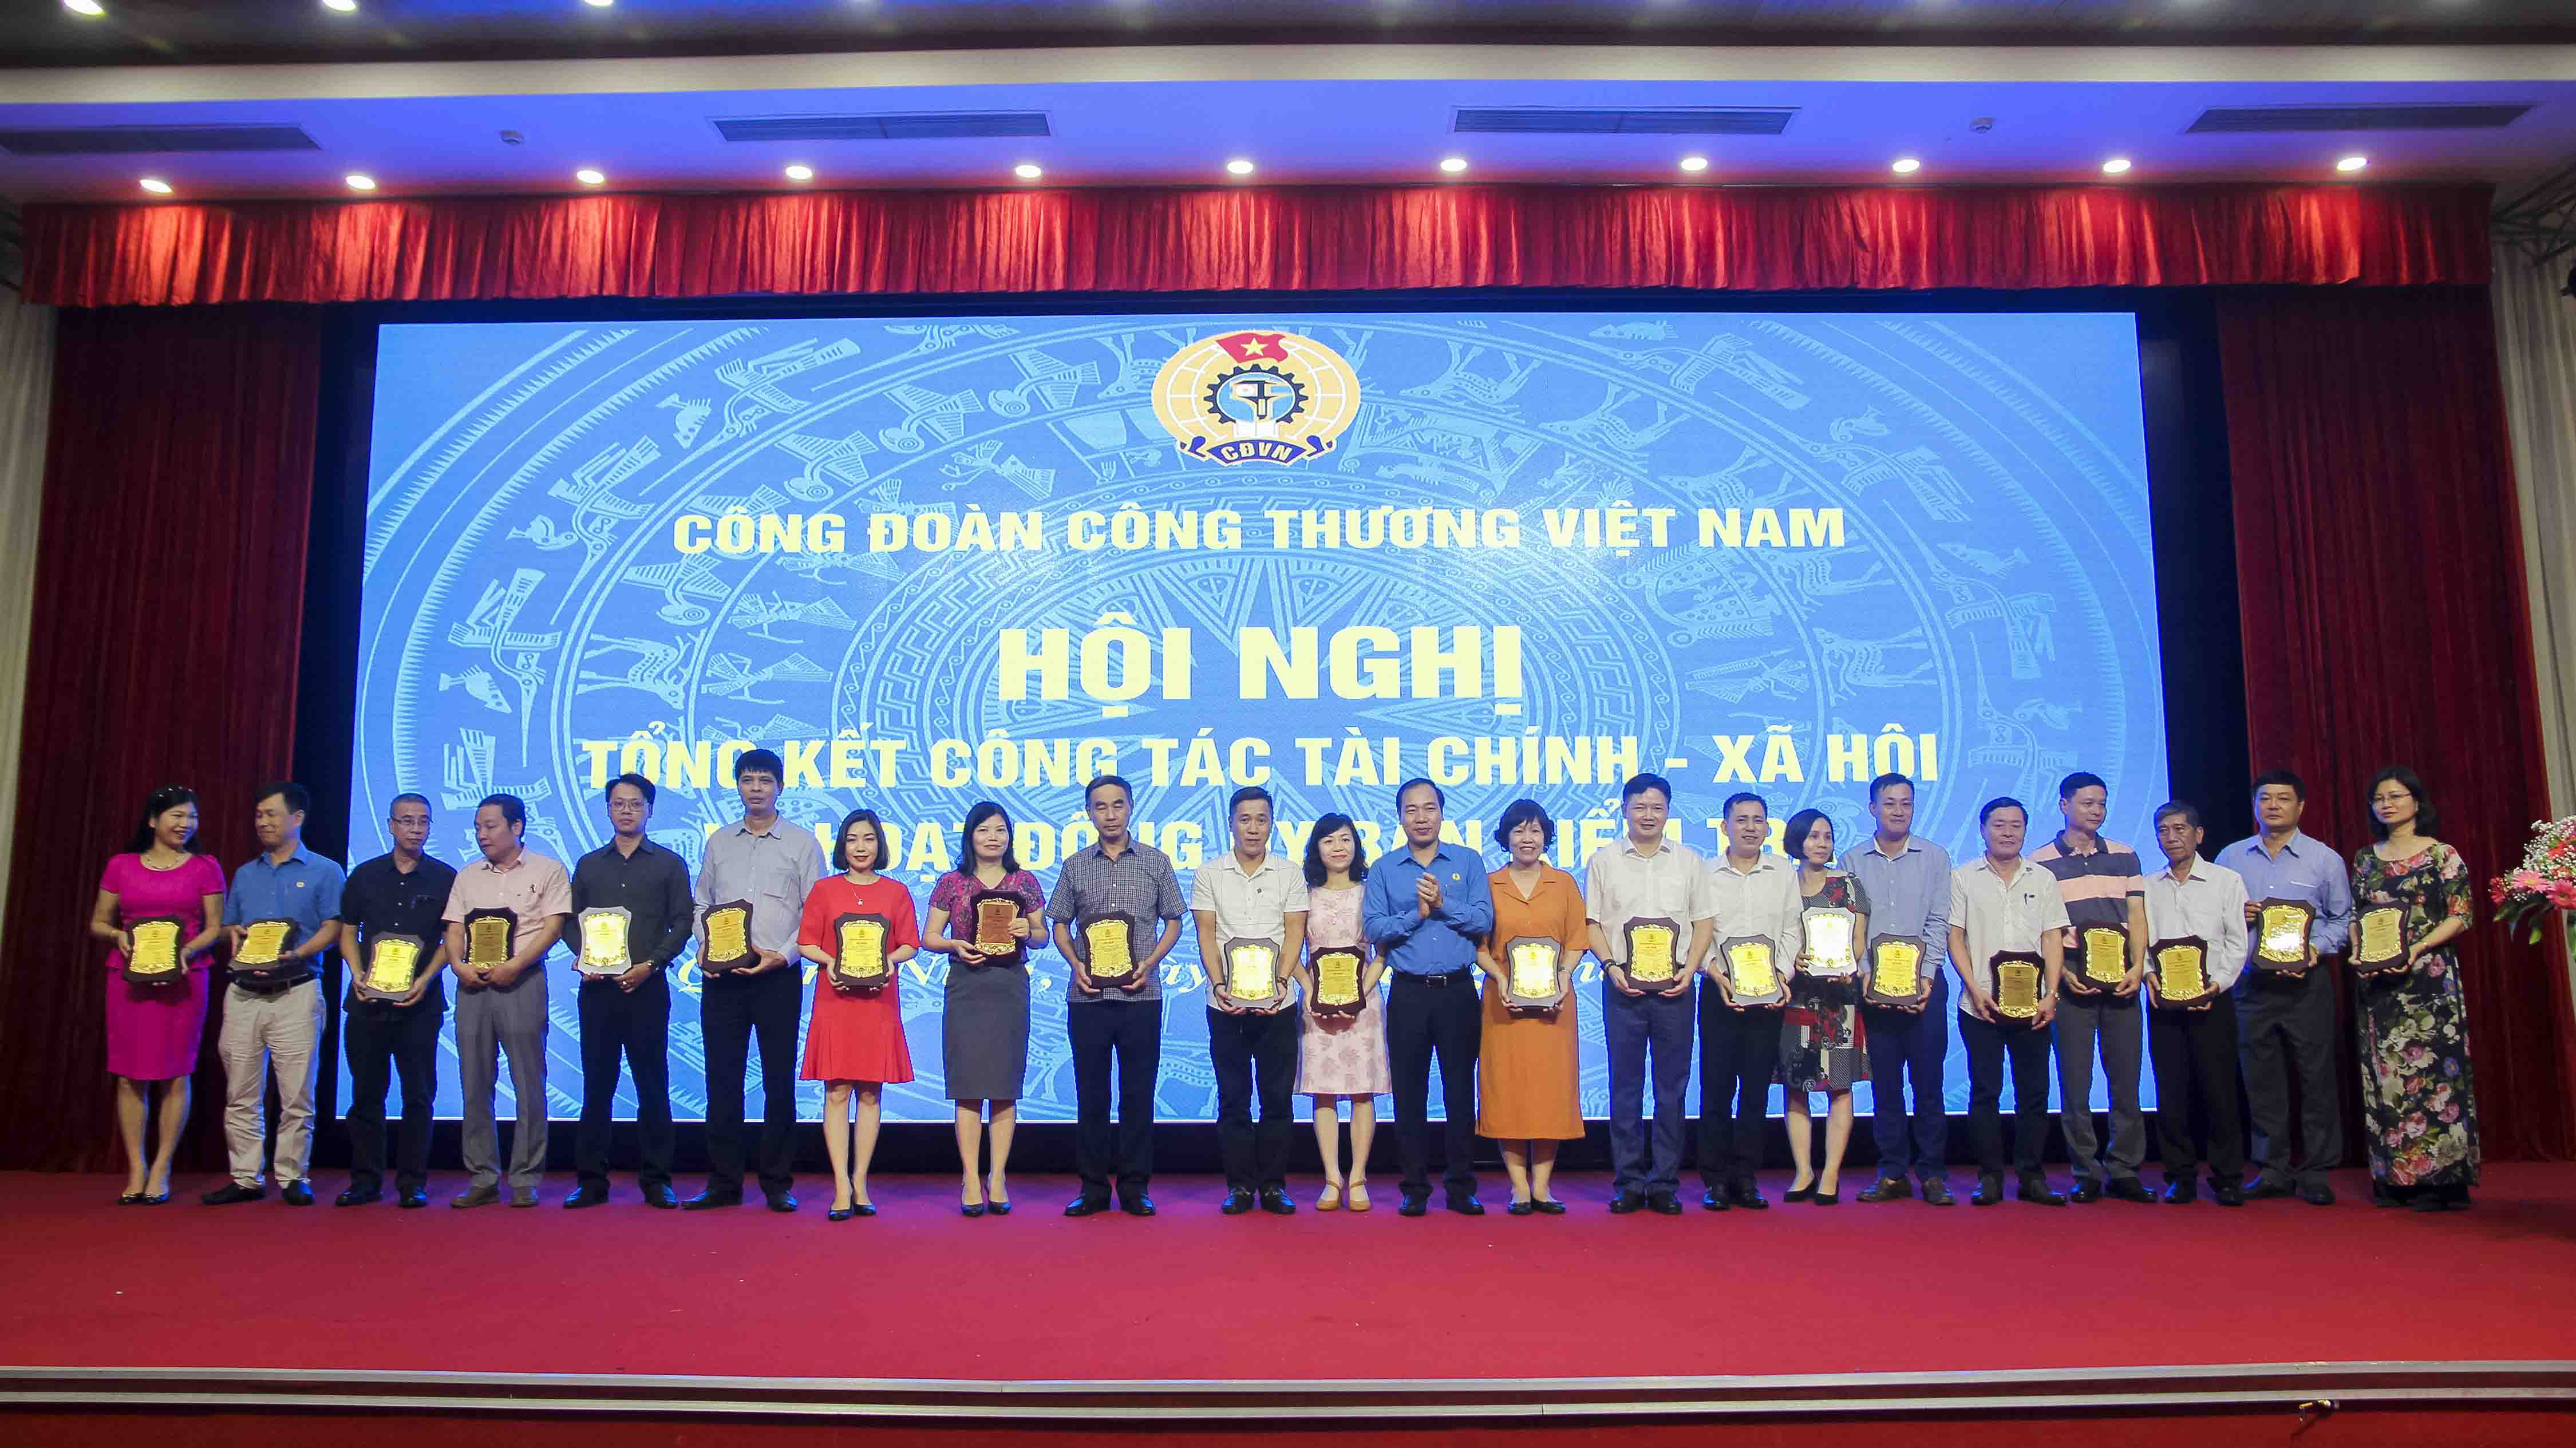 Hội nghị tổng kết công tác Tài chính - xã hội và hoạt động của Ủy ban Kiểm tra CĐCTVN năm 2018